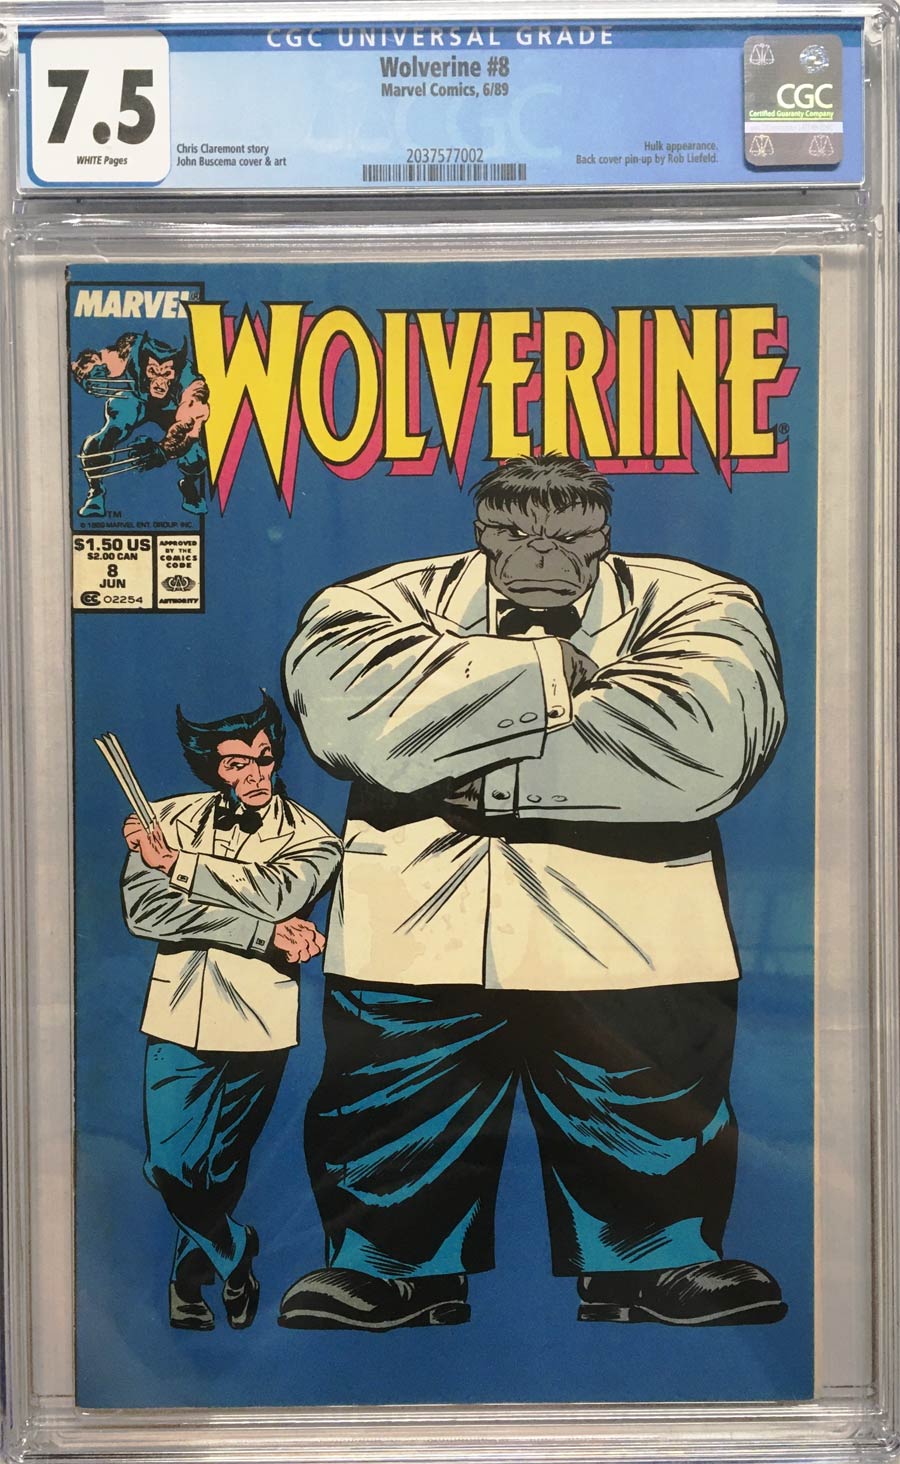 Wolverine Vol 2 #8 Cover C CGC 7.5